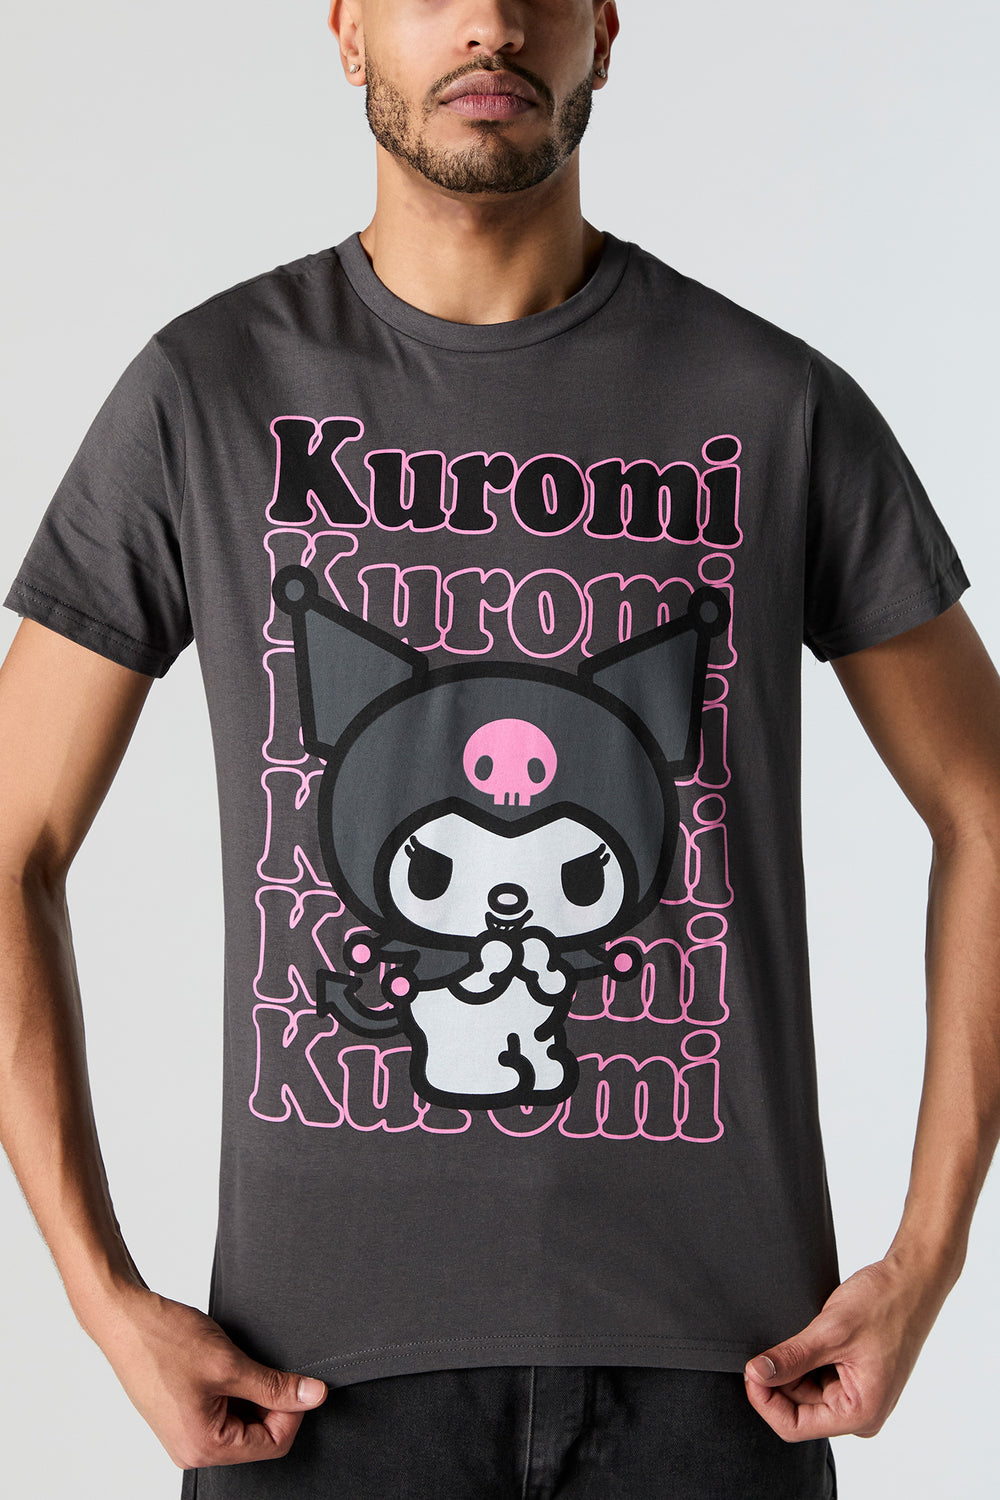 Kuromi Graphic T-Shirt Kuromi Graphic T-Shirt 1